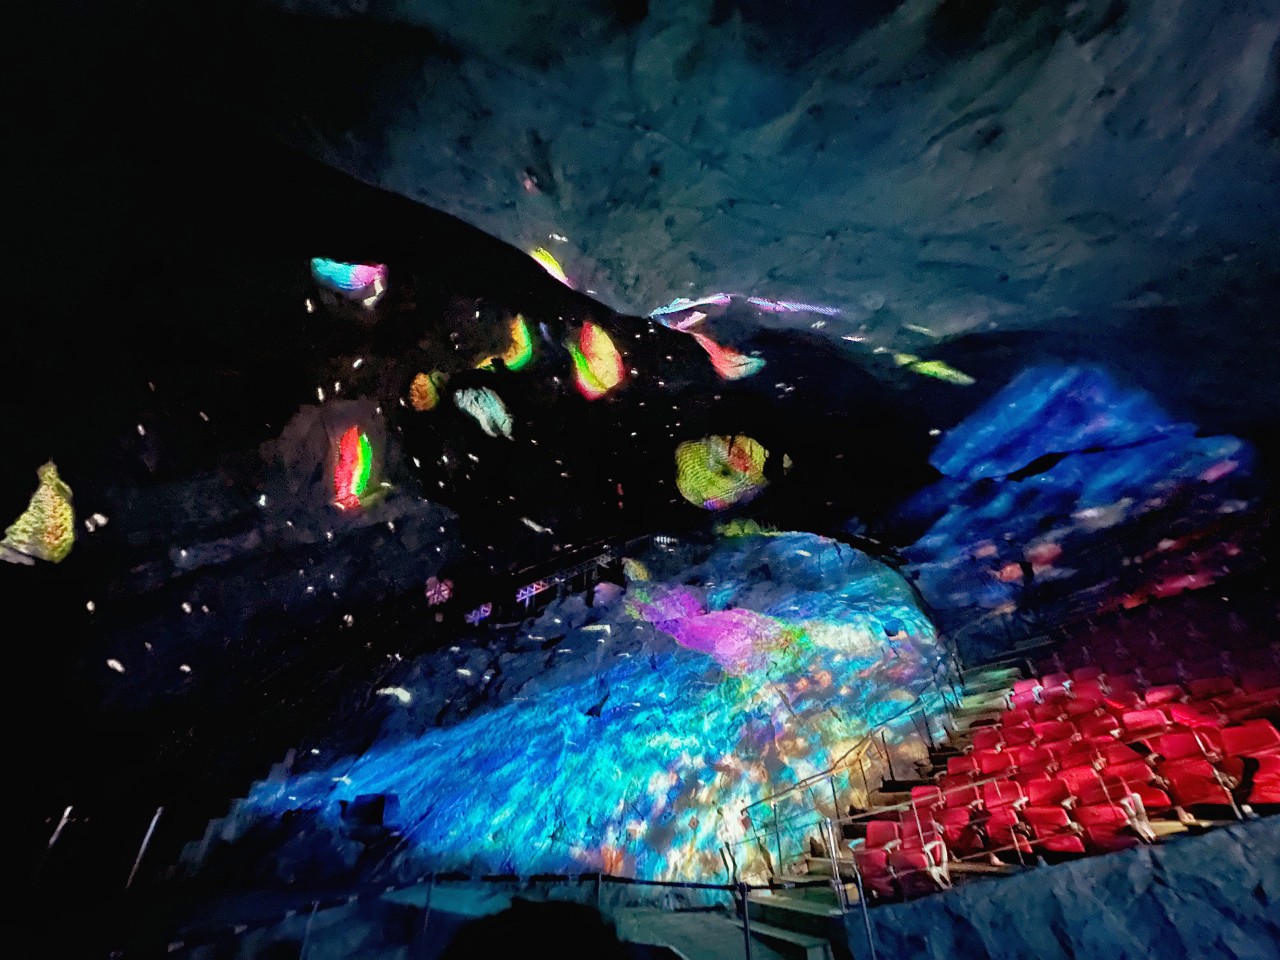 2023韓國首爾景點推薦 京畿道光明洞窟 一秒掉進阿凡達奇幻世界 超精彩燈光秀必看